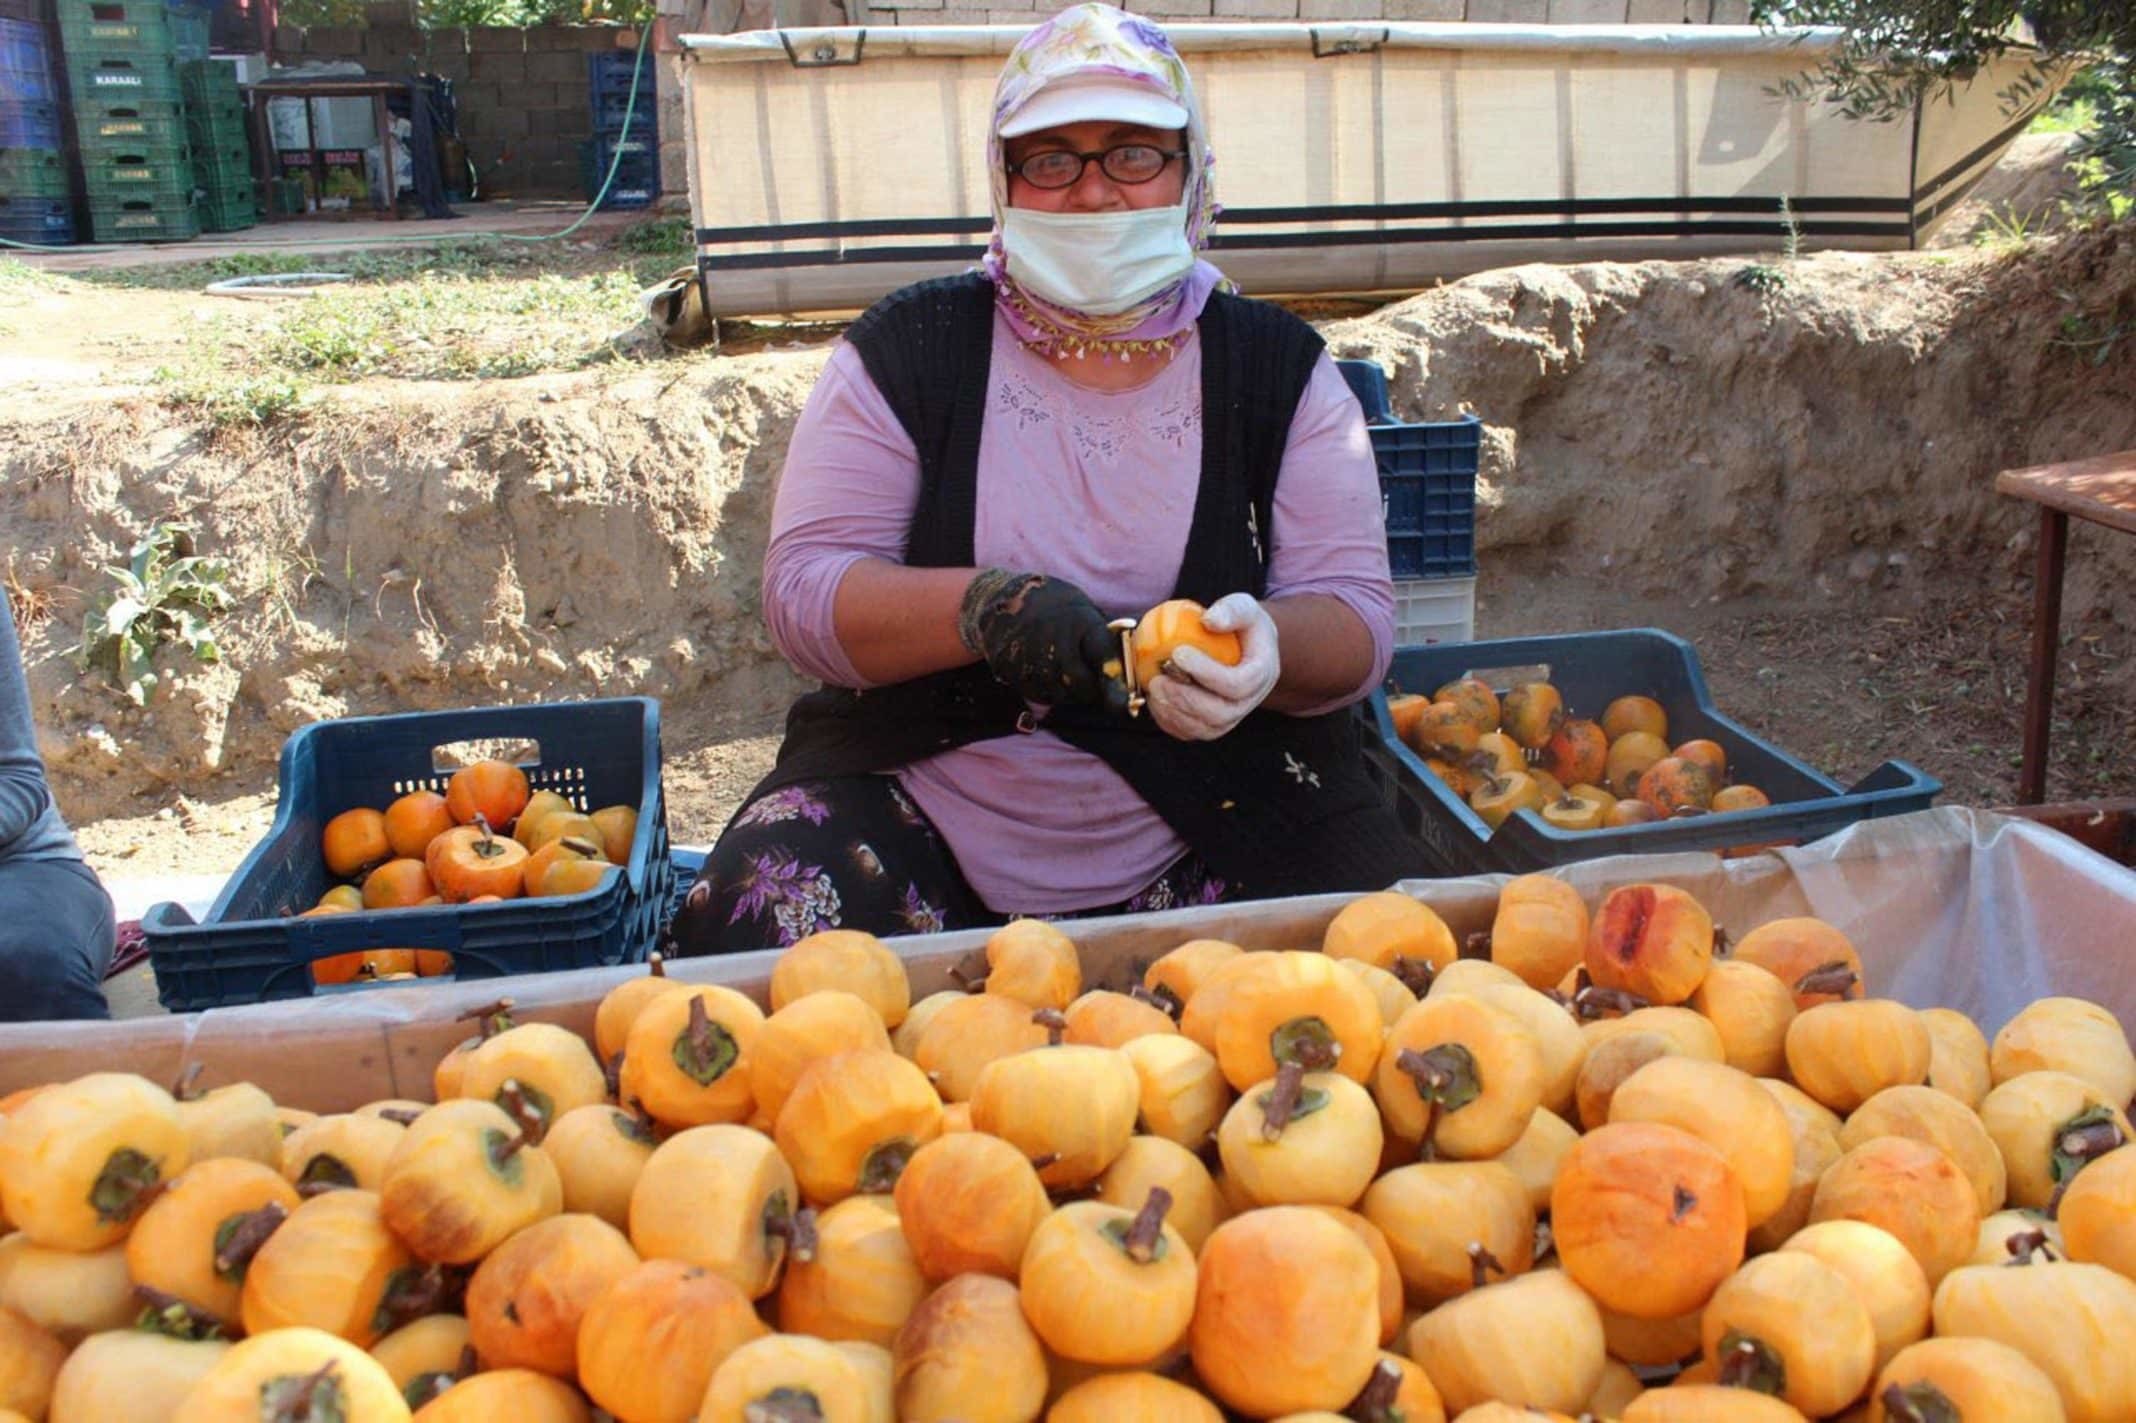 20 kadına istihdam sağlayan Yılmaz, yılda 50 ton cennet elması kurutup, Türkiye'nin dört bir yanına gönderiyor.